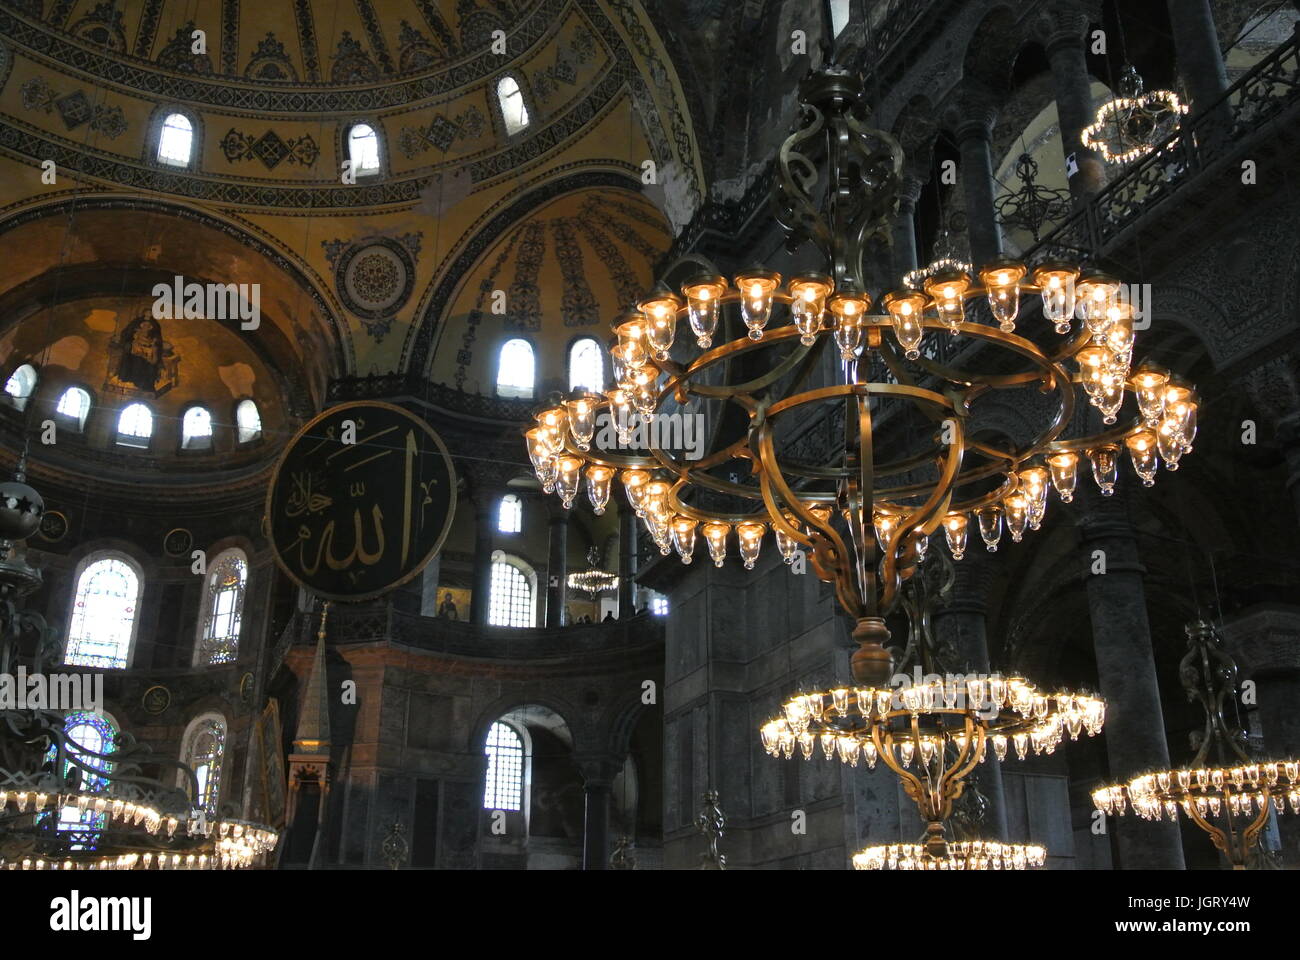 Inside Hagia Sofia, Istanbul. Stock Photo